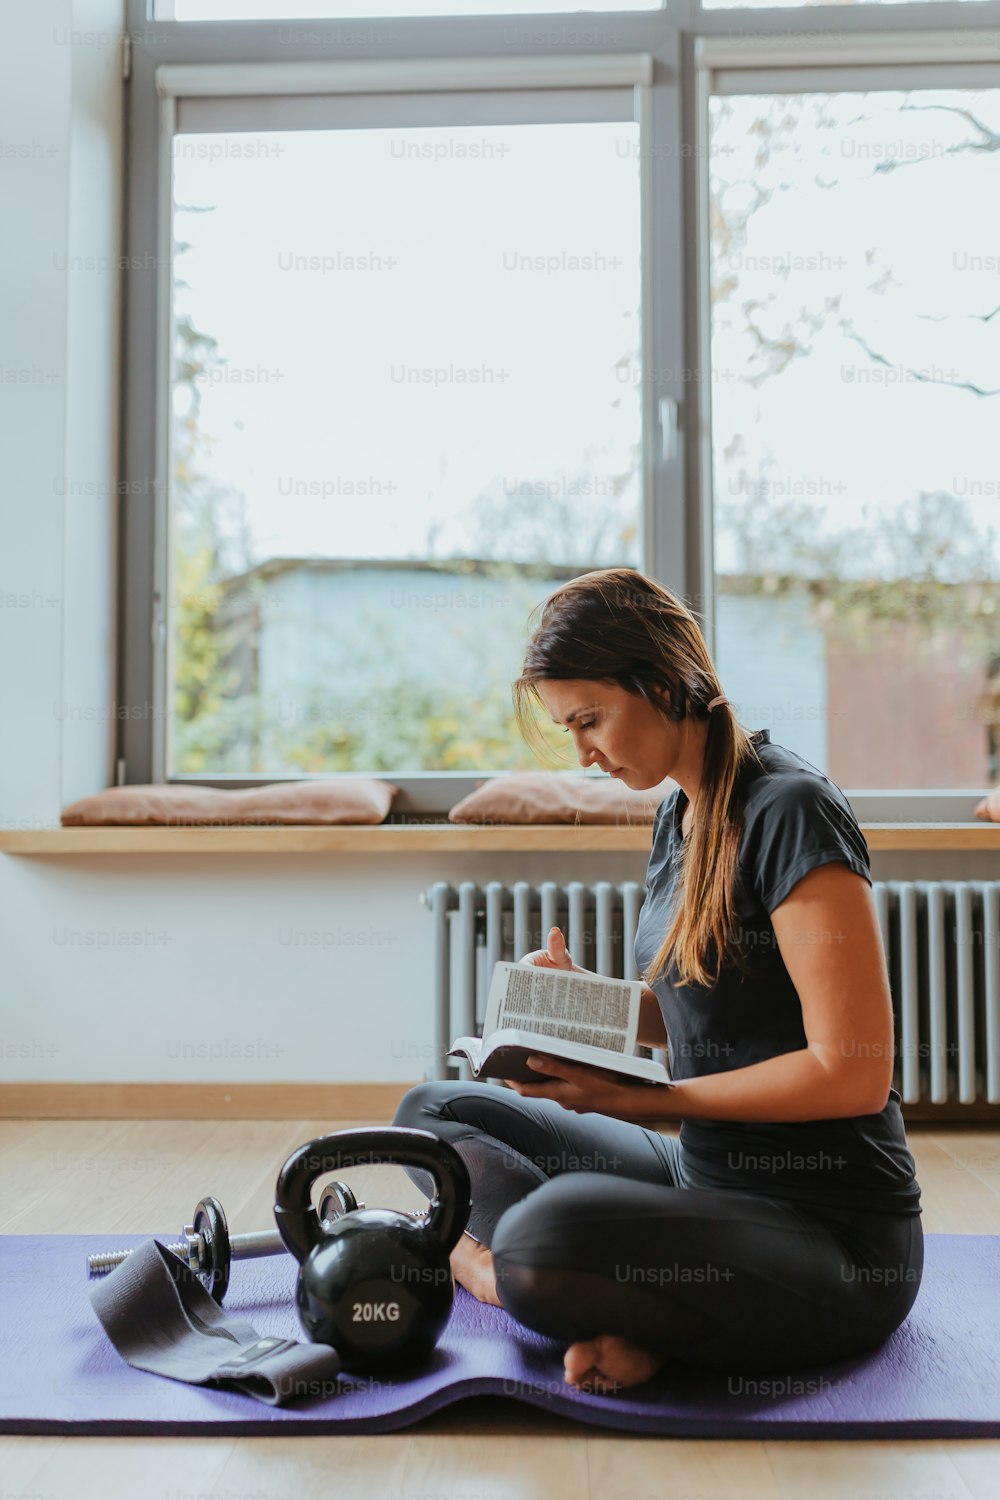 Una persona sentada en una esterilla de yoga leyendo un libro